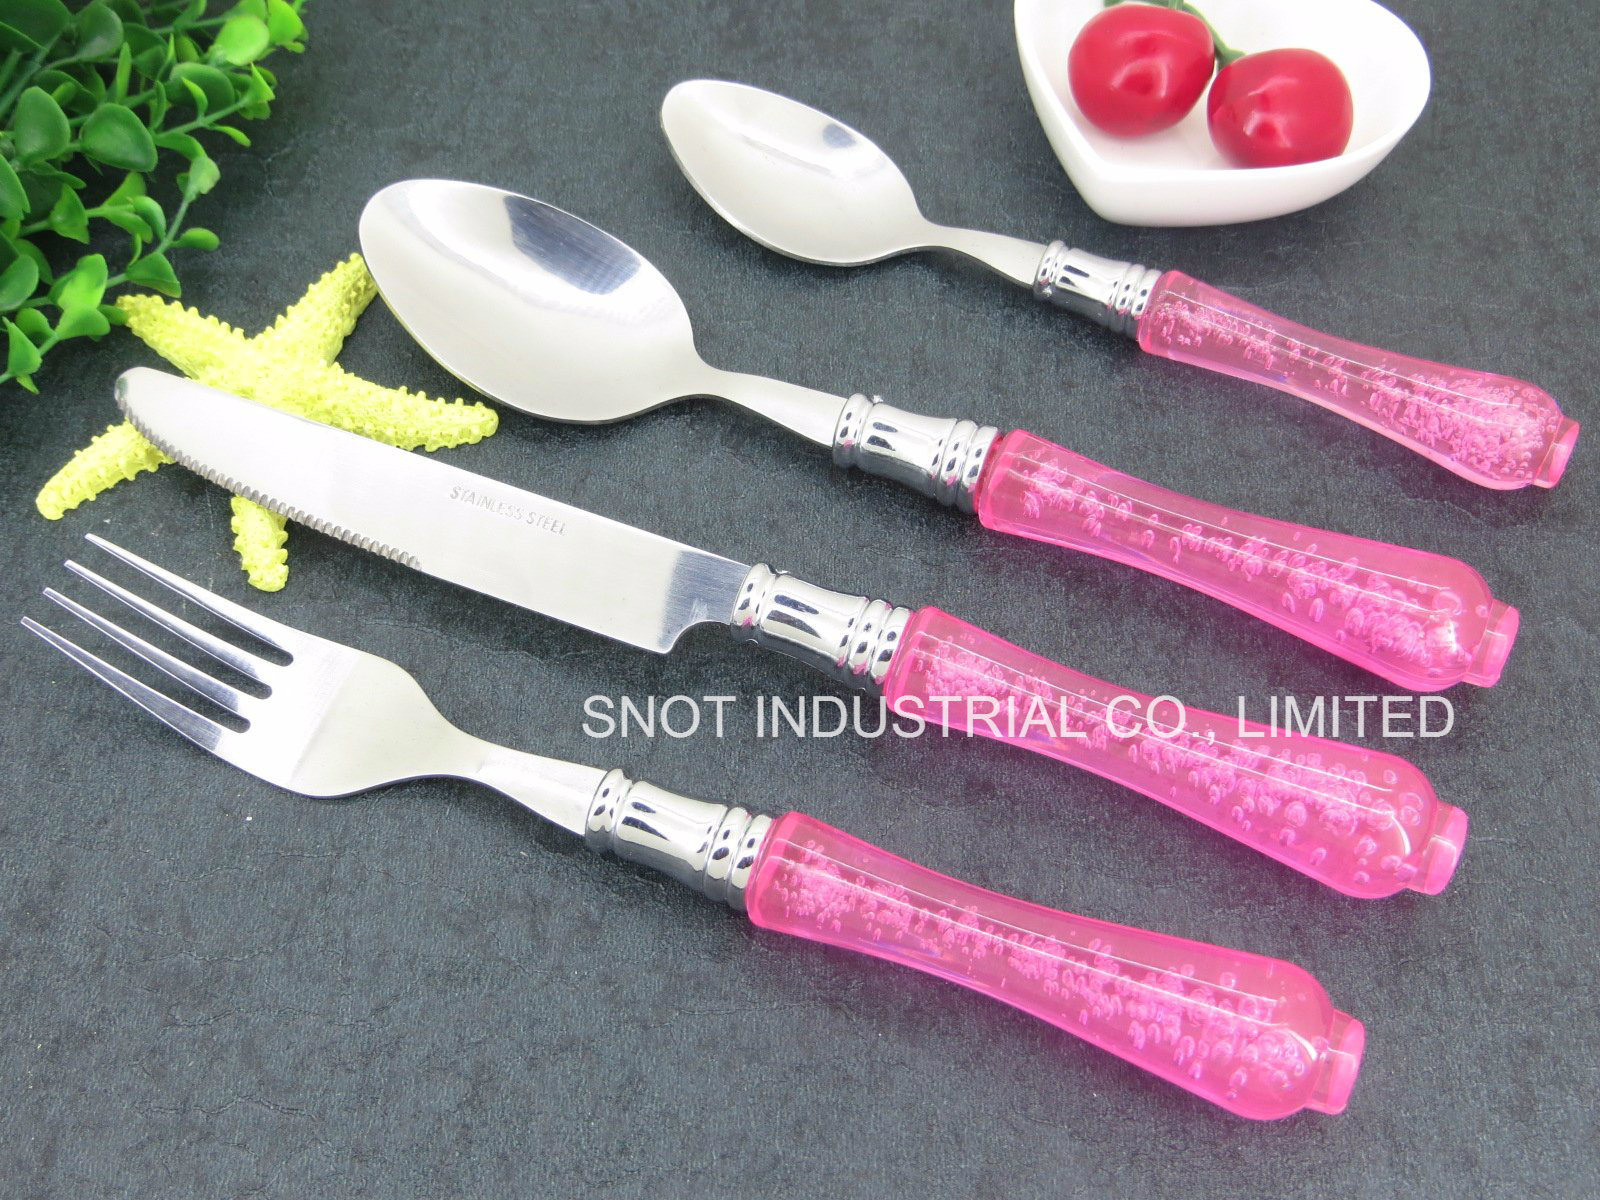 Spoon/Knife Forkk Spoon/Stainless Steel Spoon Set